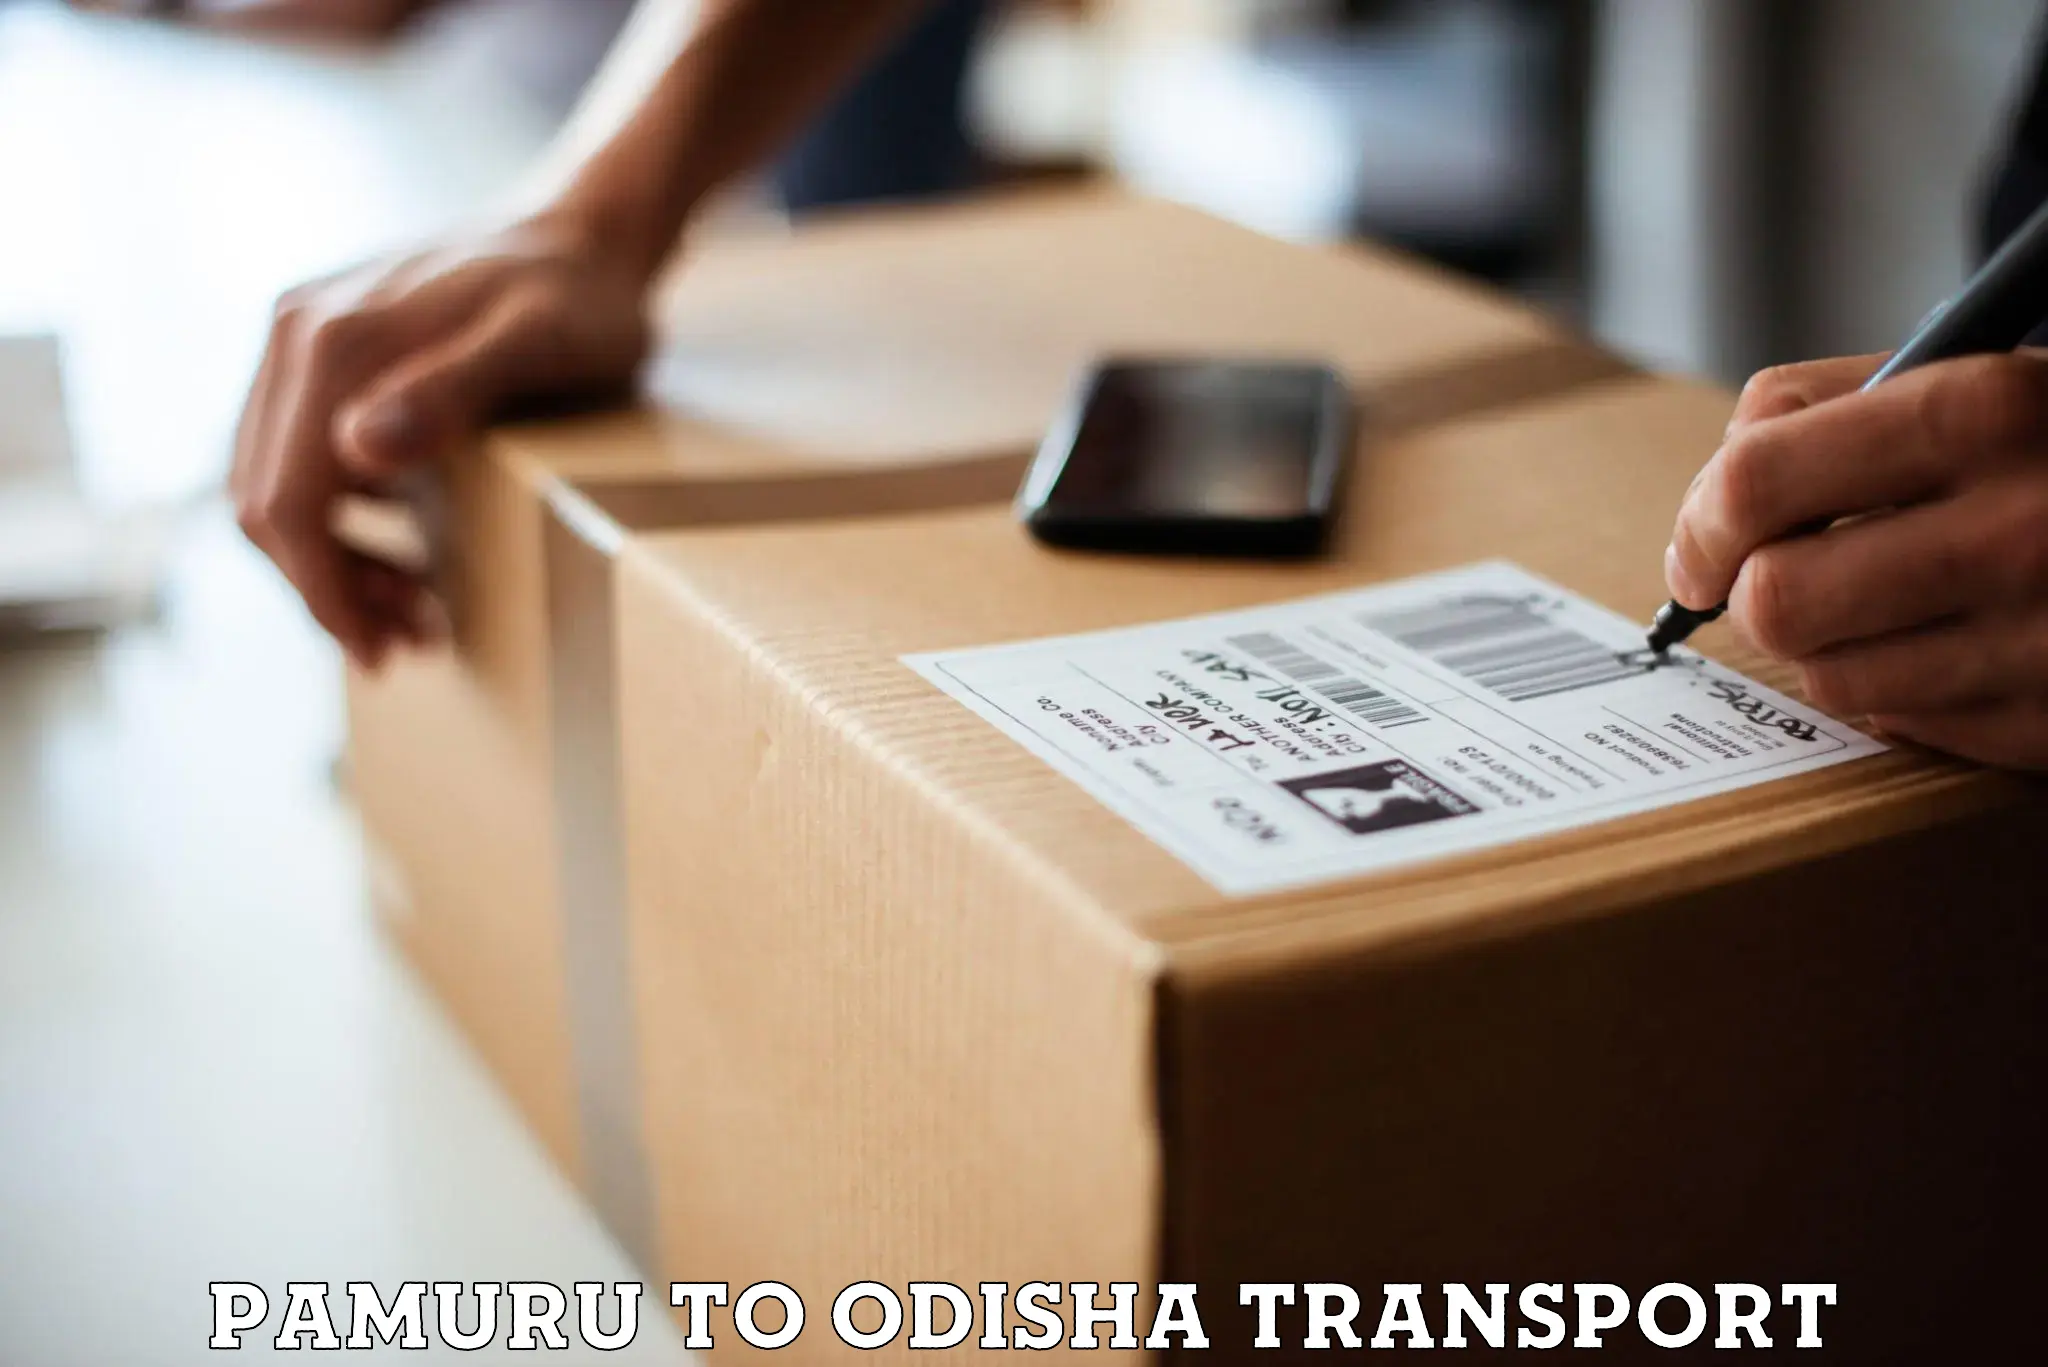 Furniture transport service Pamuru to Anandapur